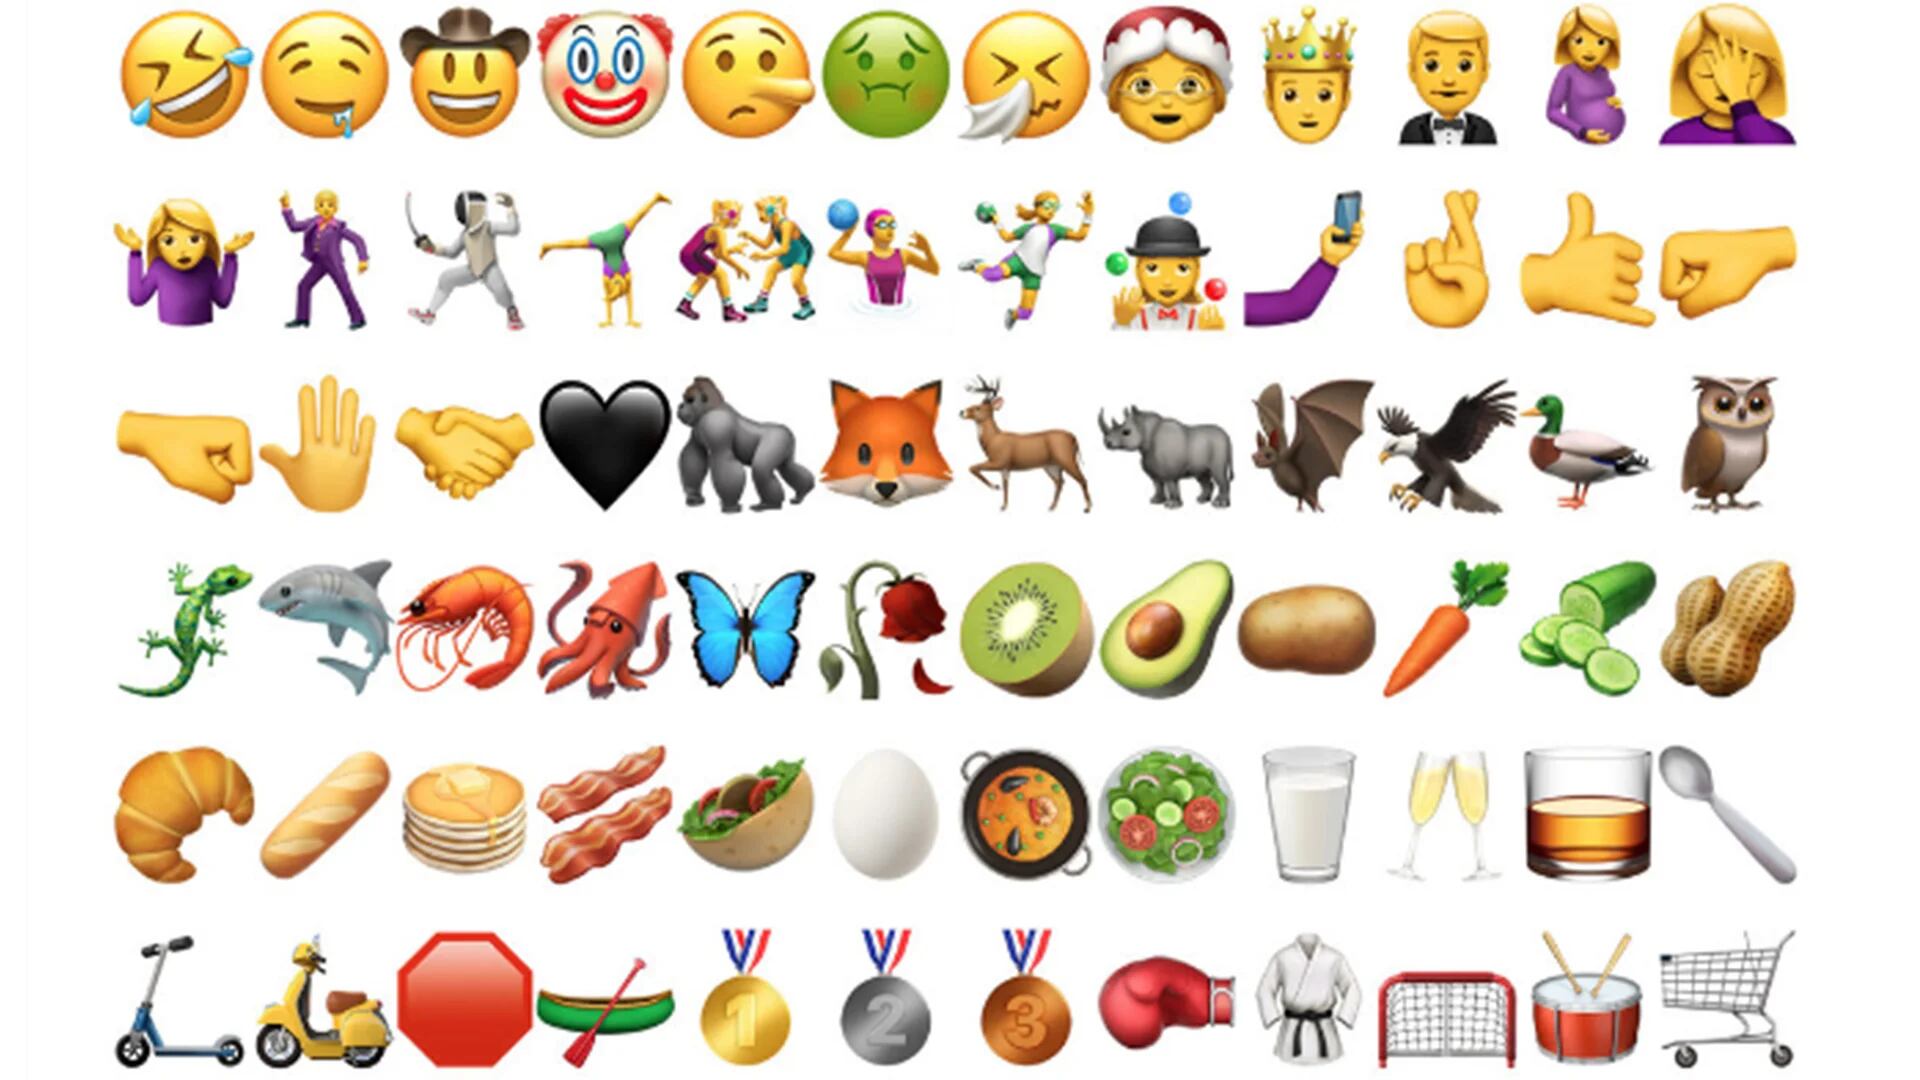 El diseño y la cantidad de emojis disponible en las plataformas ha evolucionado con el paso de los años.